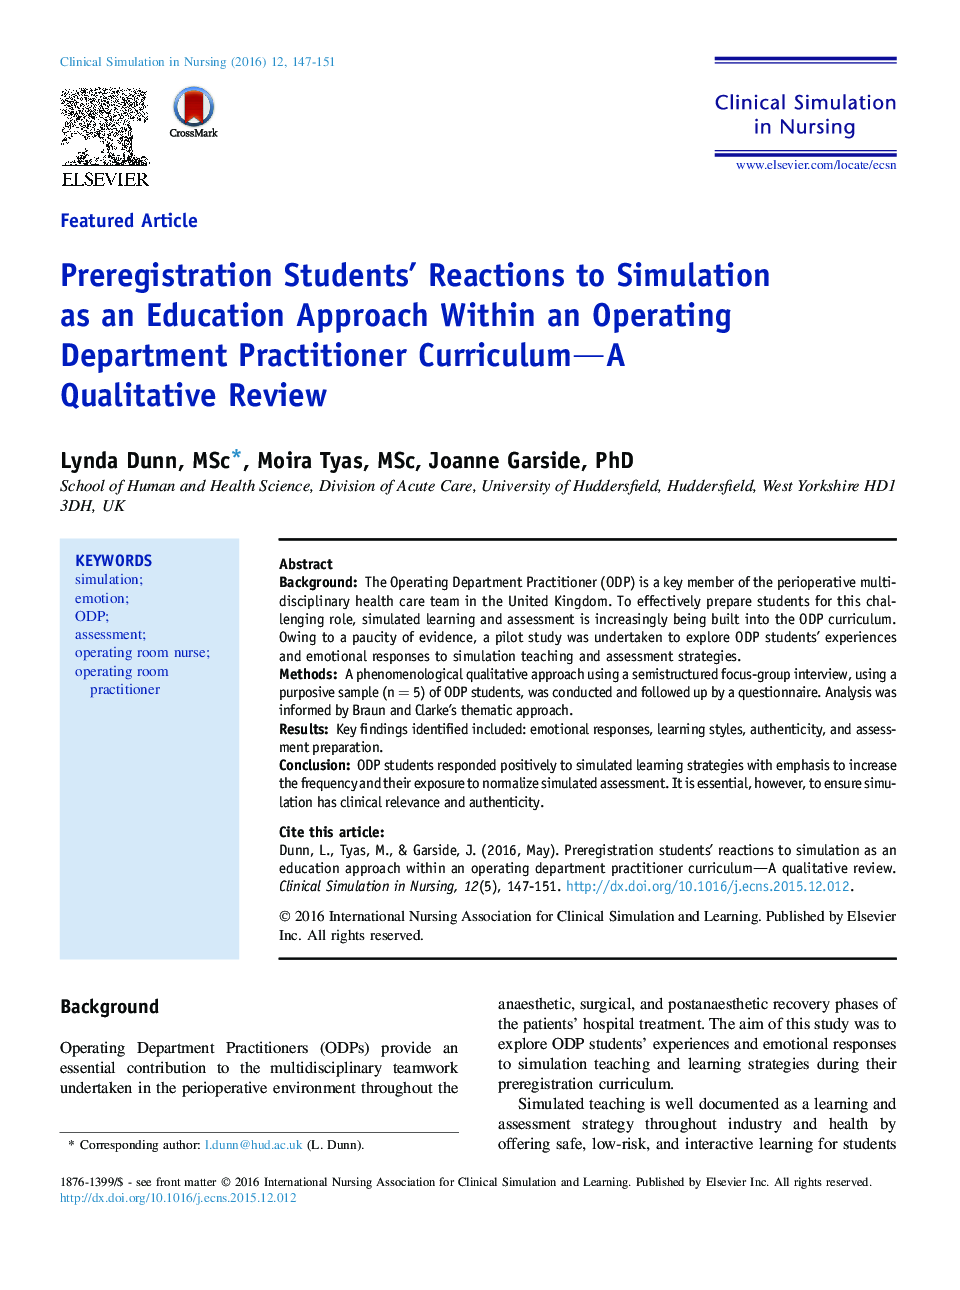 واکنش دانشجویان پیش ثبت نام به شبیه سازی به عنوان یک رویکرد آموزشی در یک برنامه درسی پزشک اتاق عمل؛ نقد کیفی